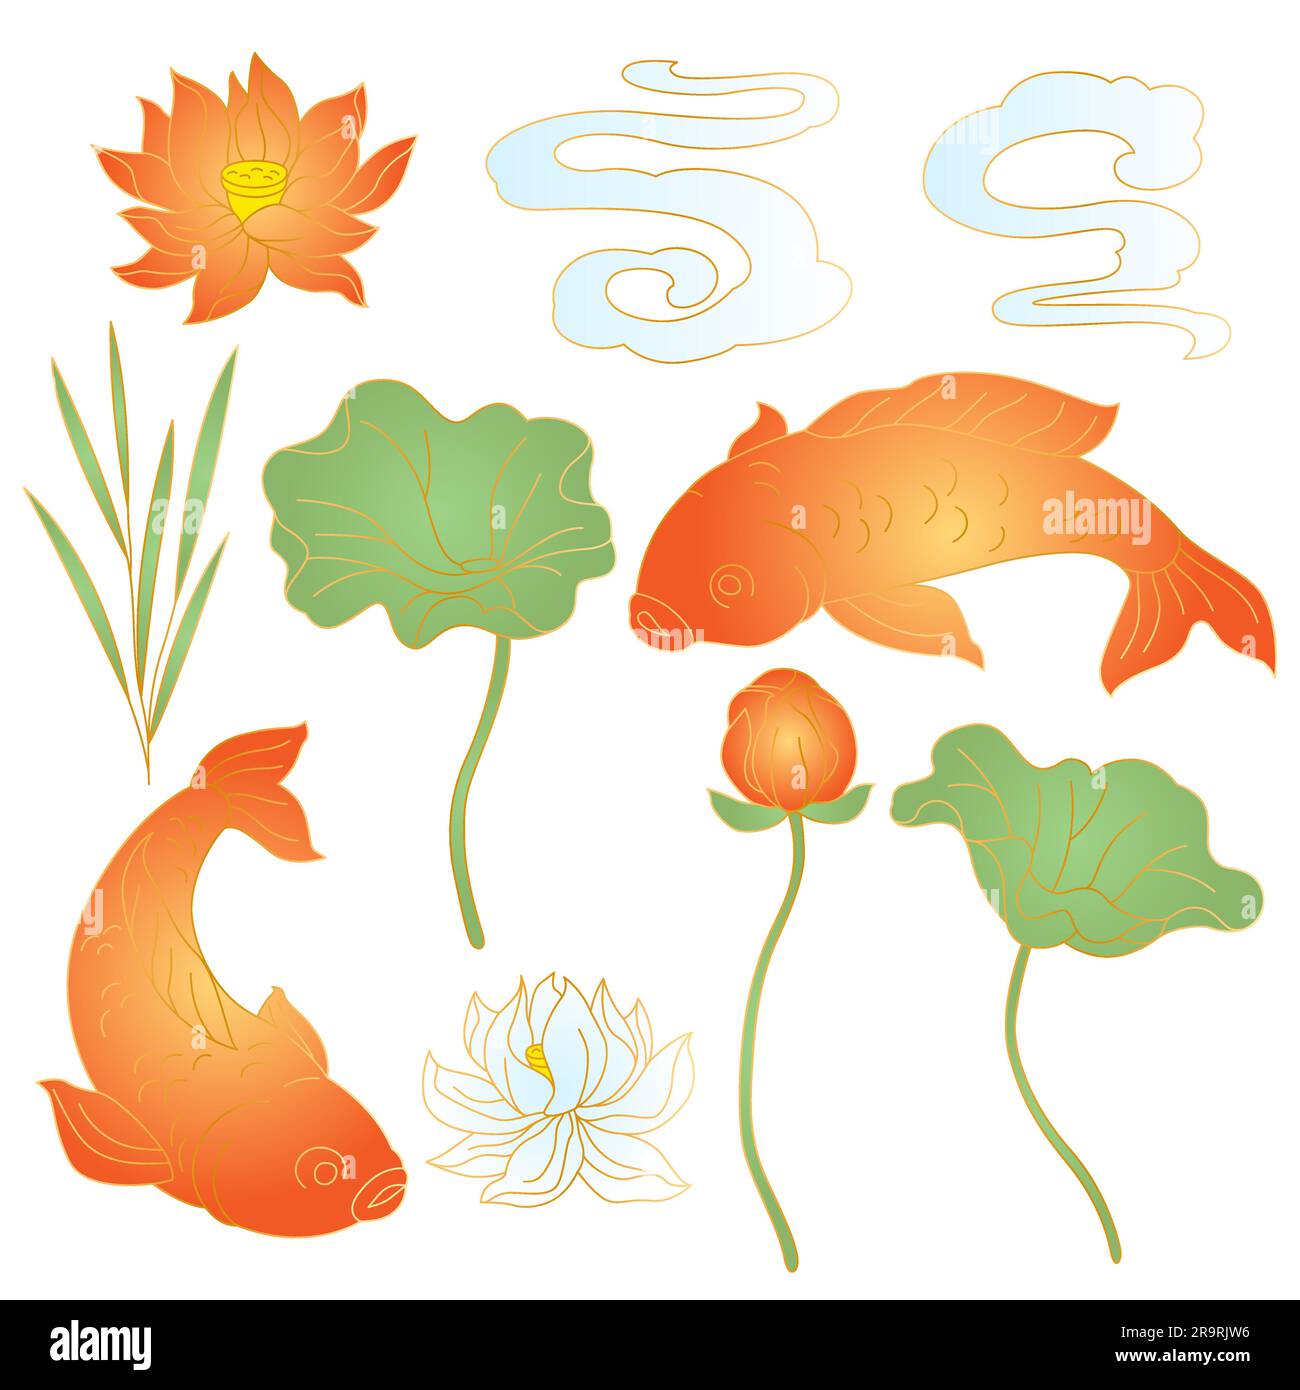 Orientalisches Fisch- und Lotusset. Traditionelle chinesische und japanische Illustration. Stock Vektor